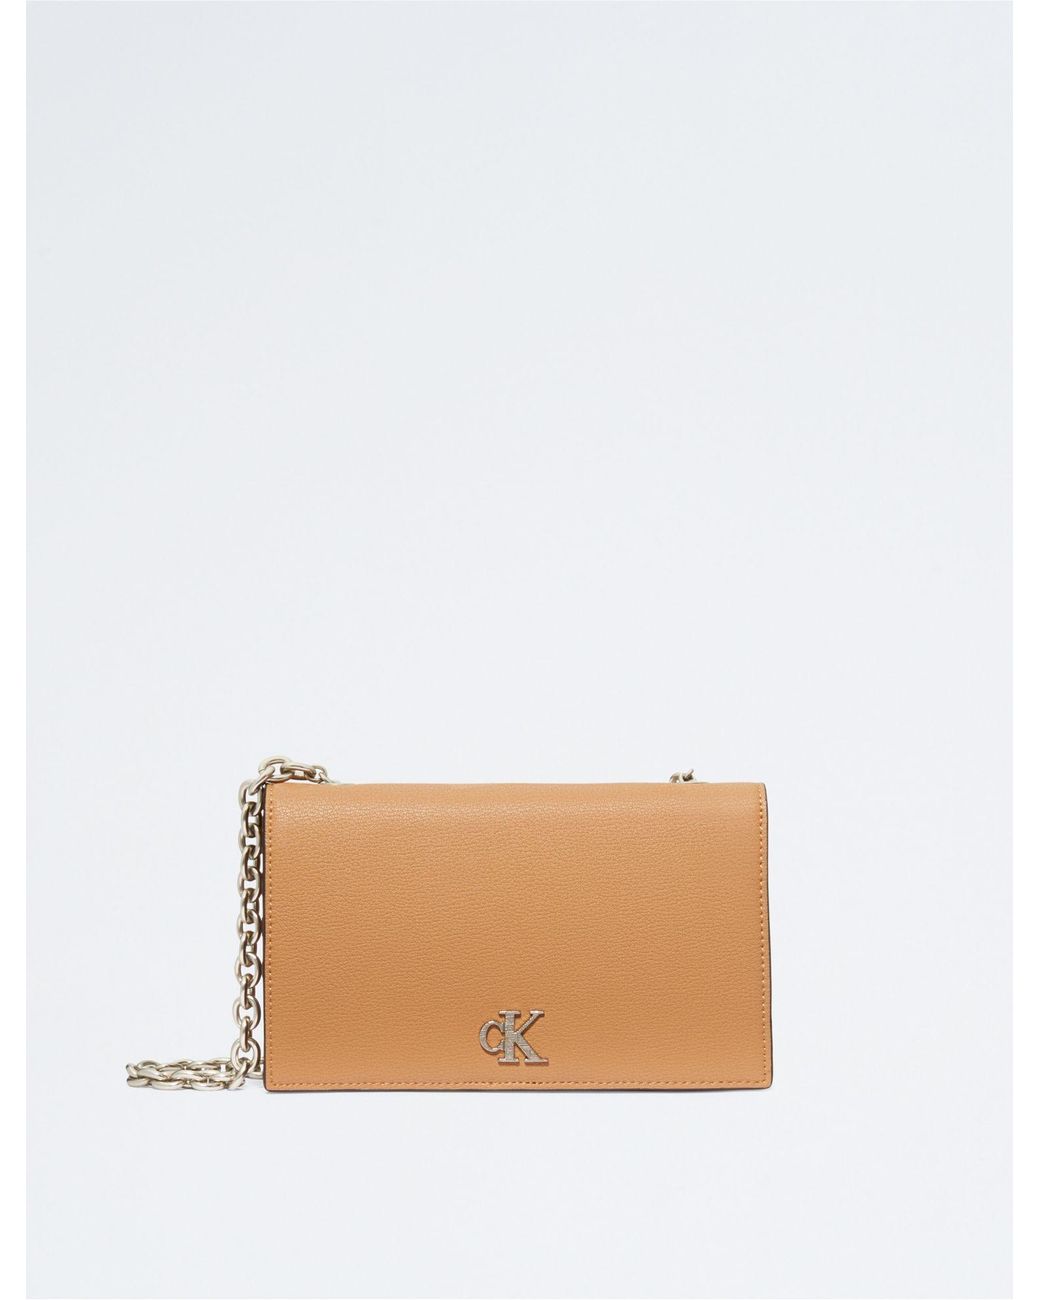 Calvin Klein Minimal Monogram Chain Strap Wallet in White | Lyst